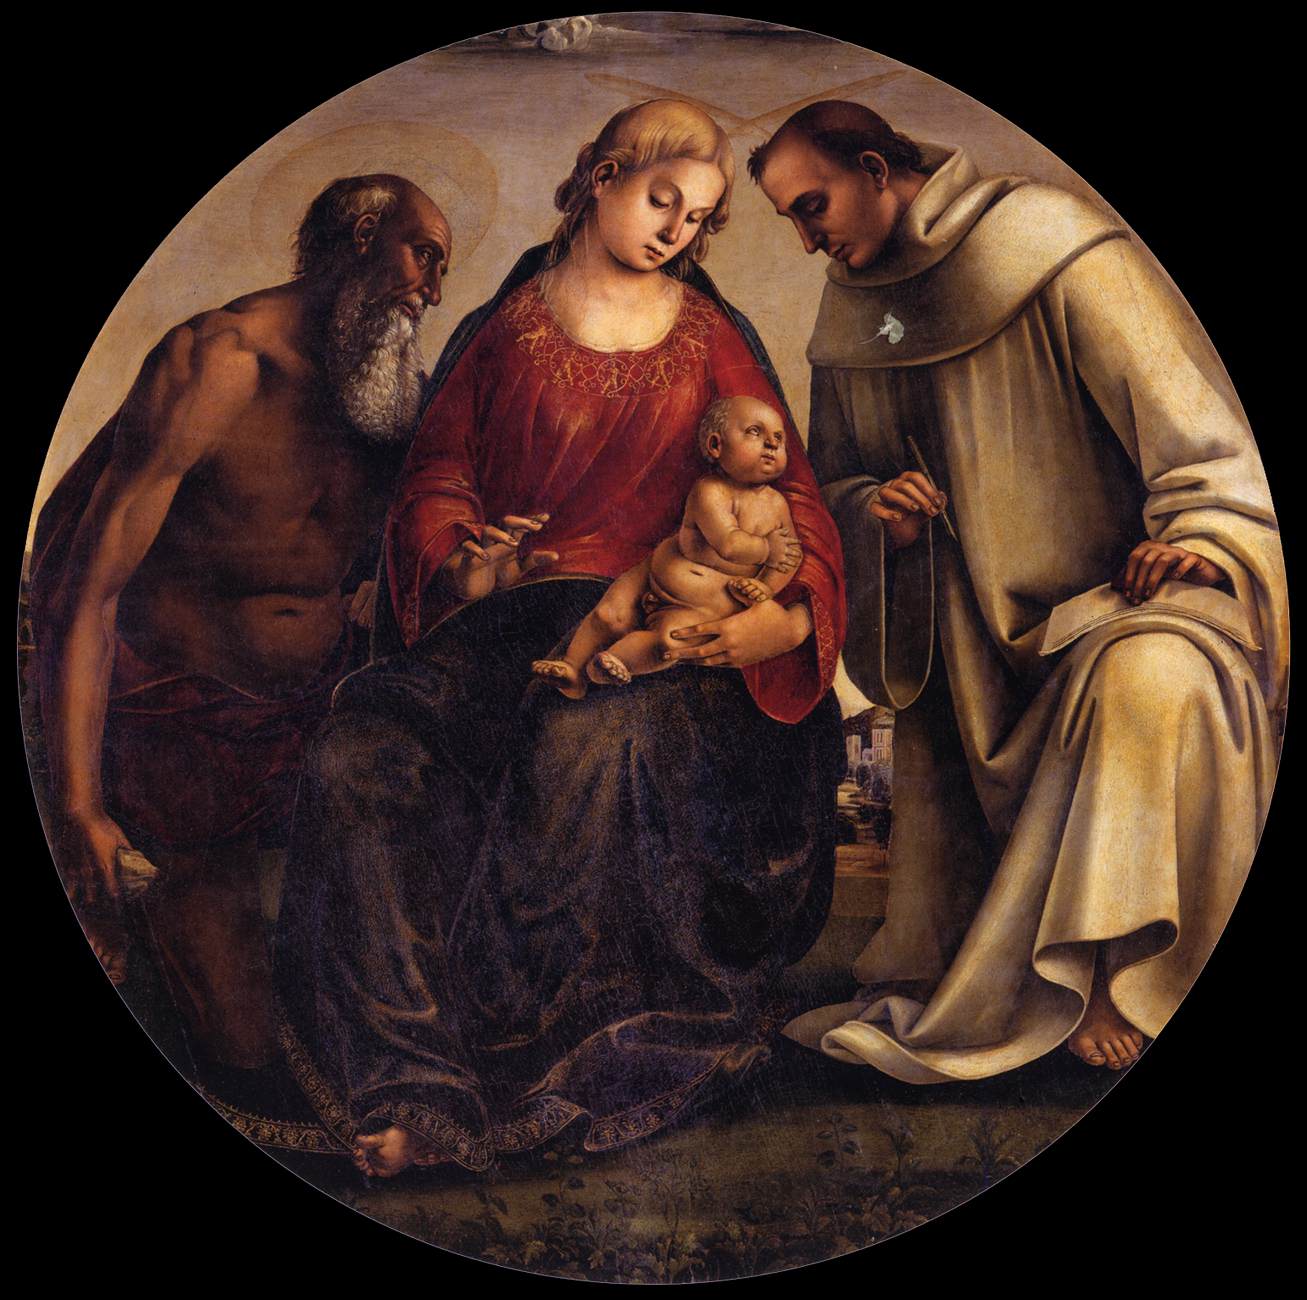 La Virgen y el Niño con San Jerónimo y Bernard de Clairvaux